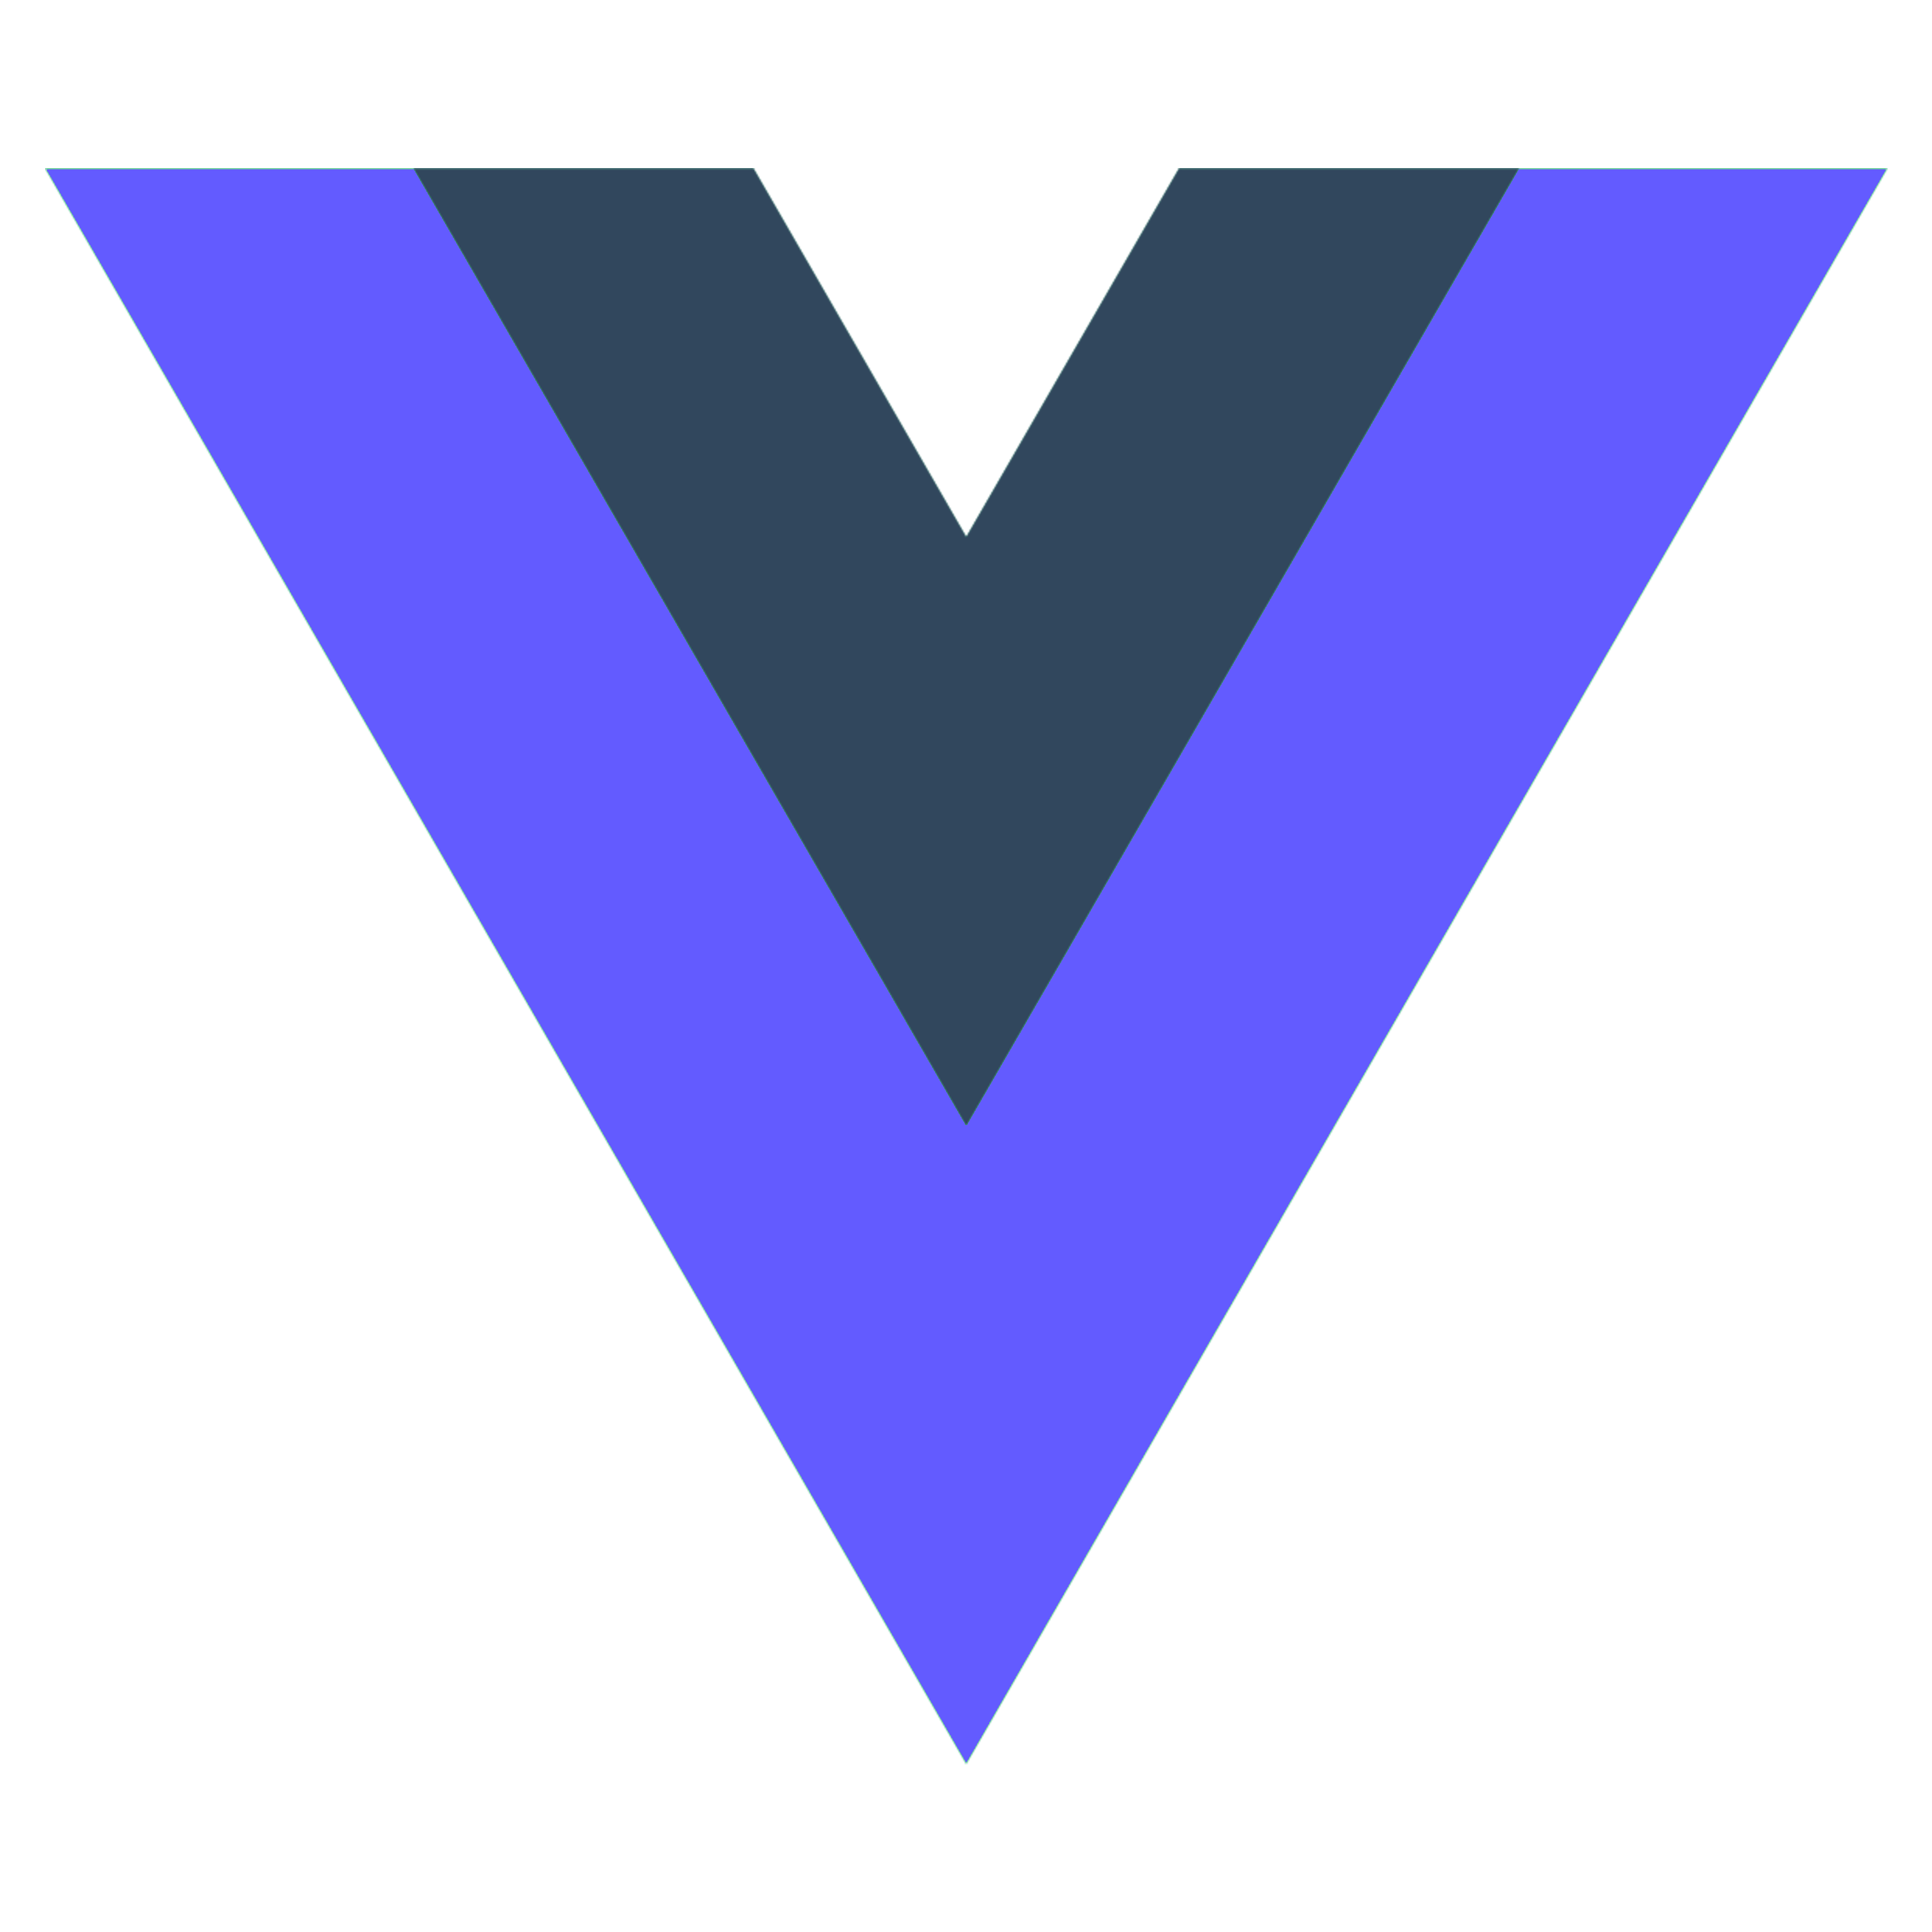 vue-stripe-logo-variant-2.png